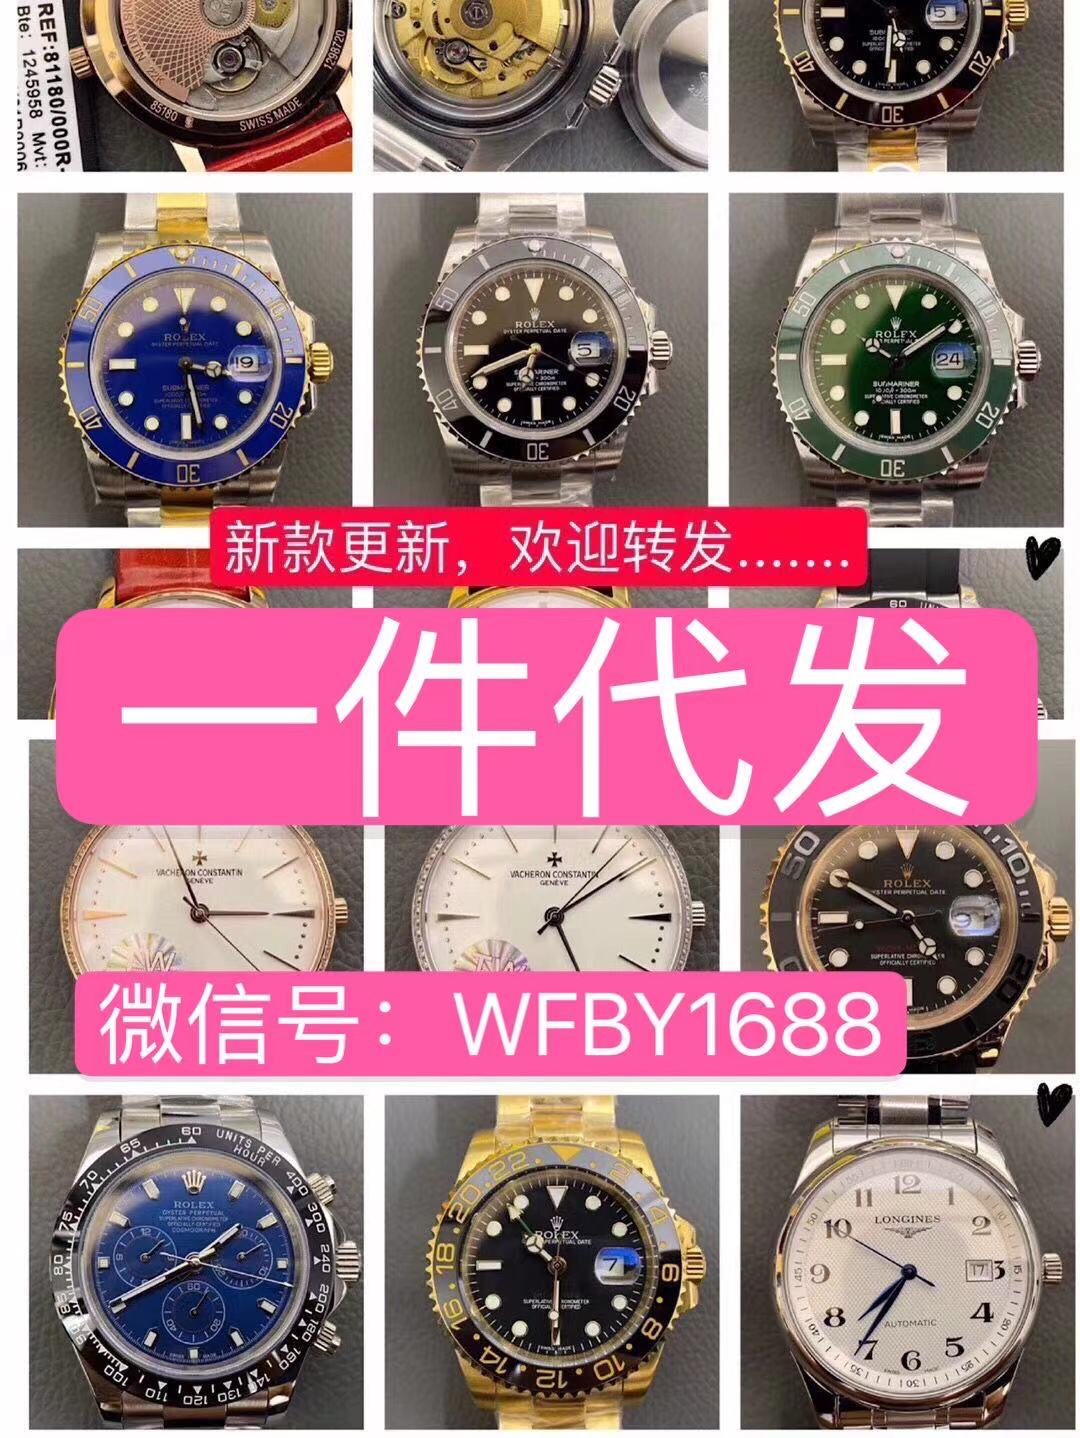 广州站西手表批发 20-100元 手表 高档手表批发 一手手表货源 机械表 代理一件代发